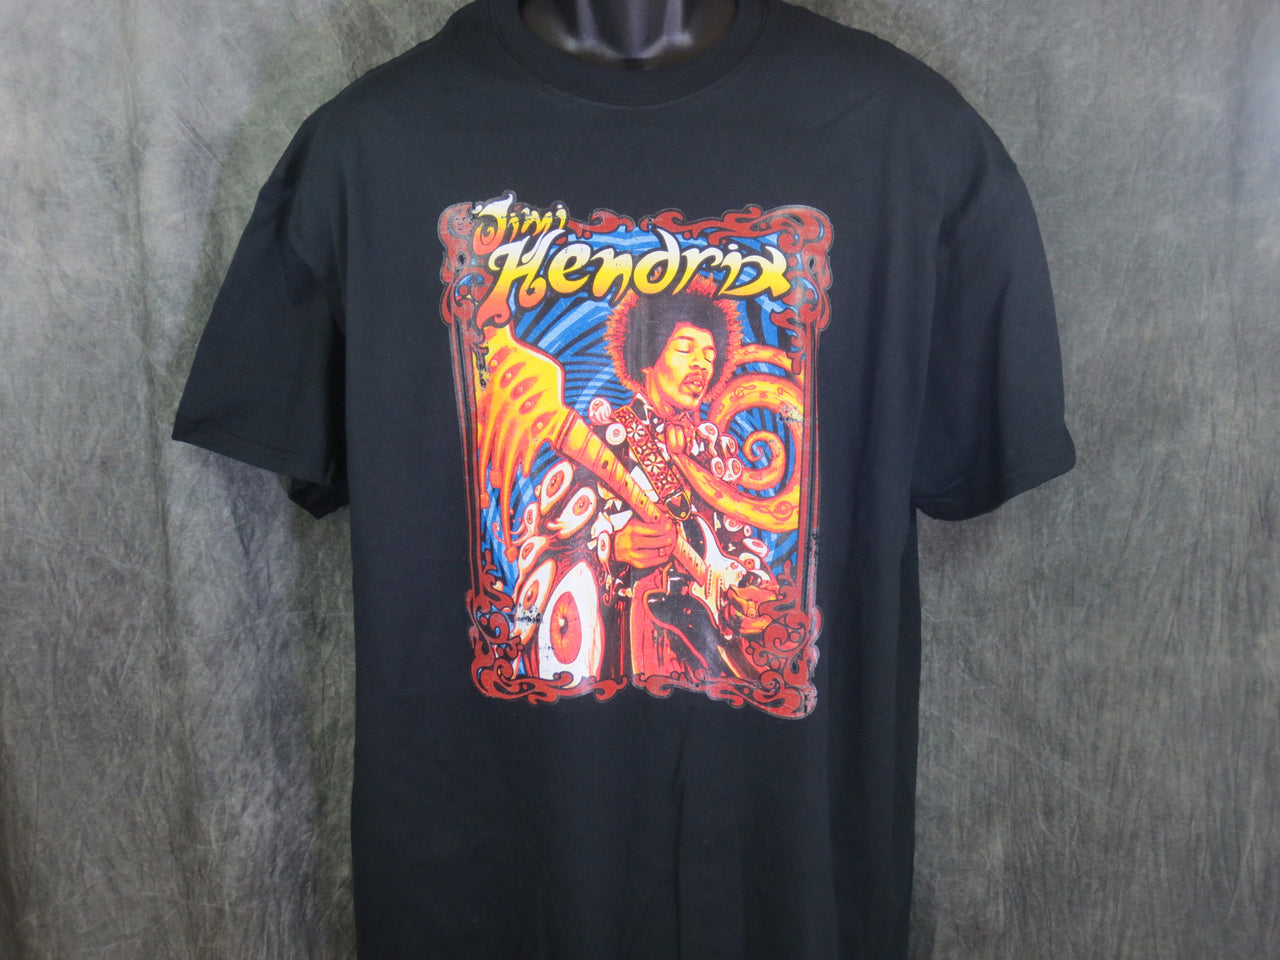 Jimi Hendrix Guitar solo tshirt - TshirtNow.net - 2